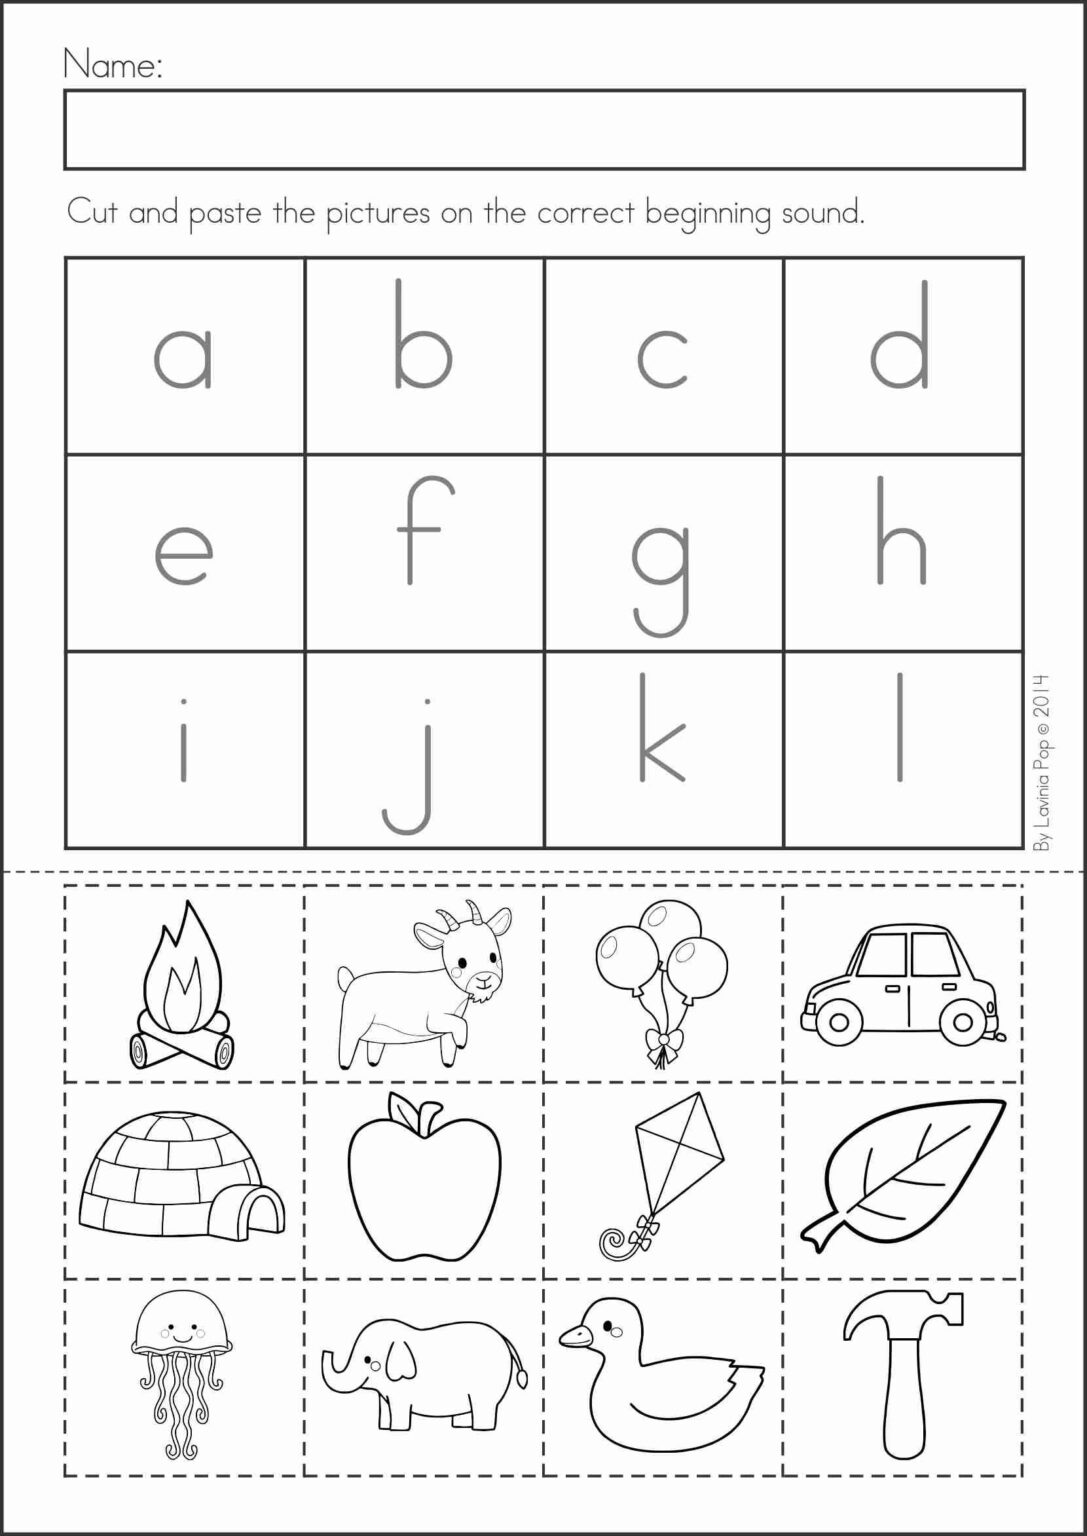 cut-and-paste-preschool-worksheet